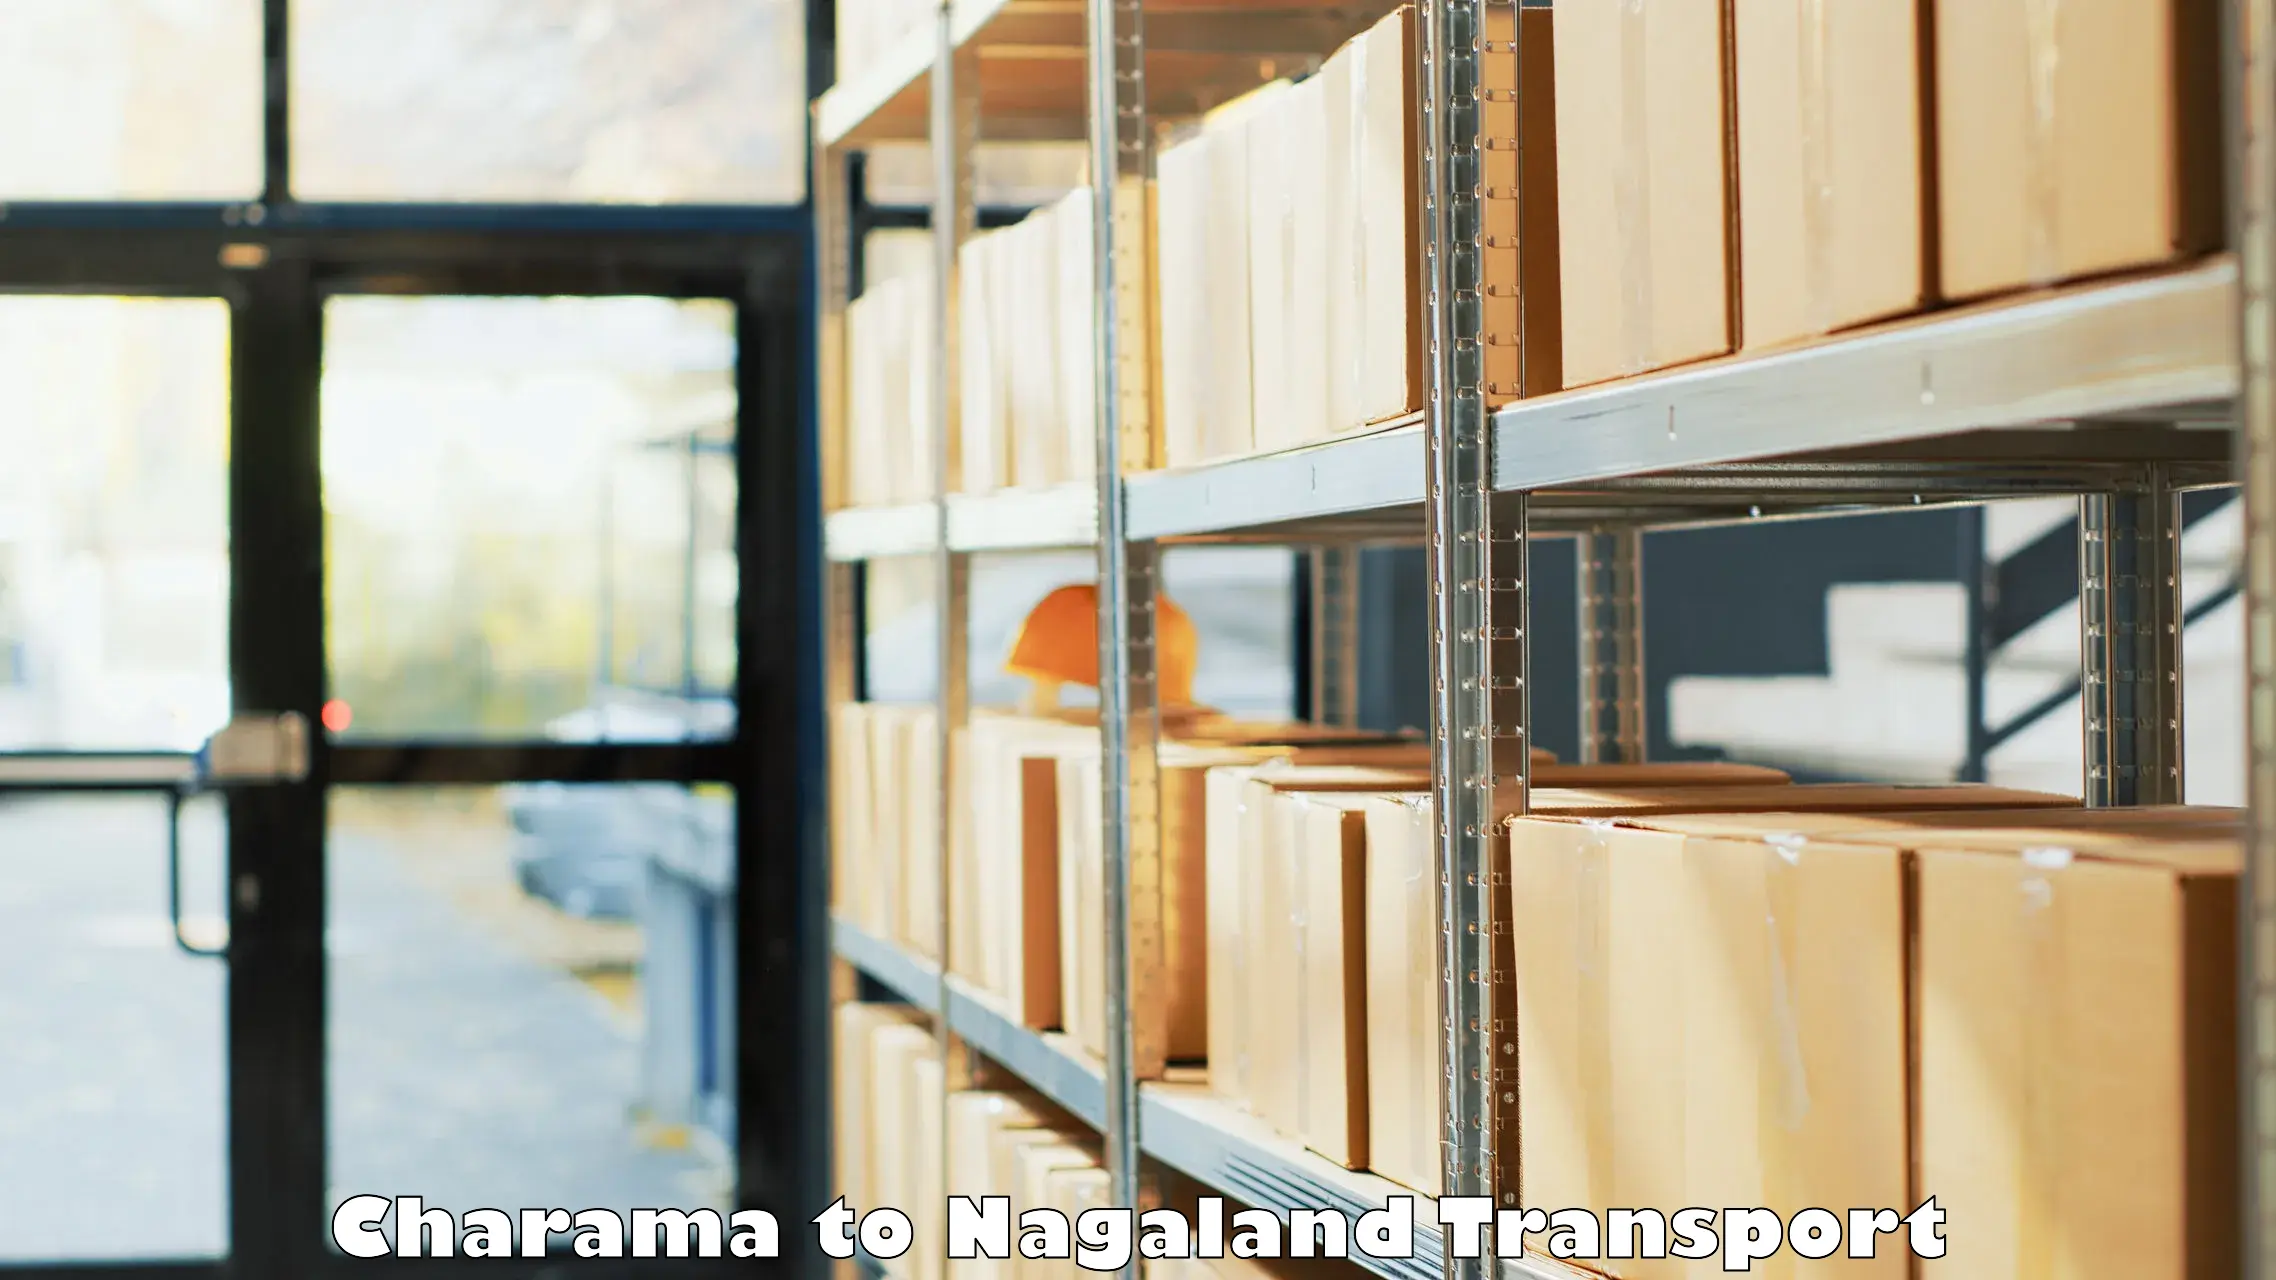 Furniture transport service Charama to Mokokchung